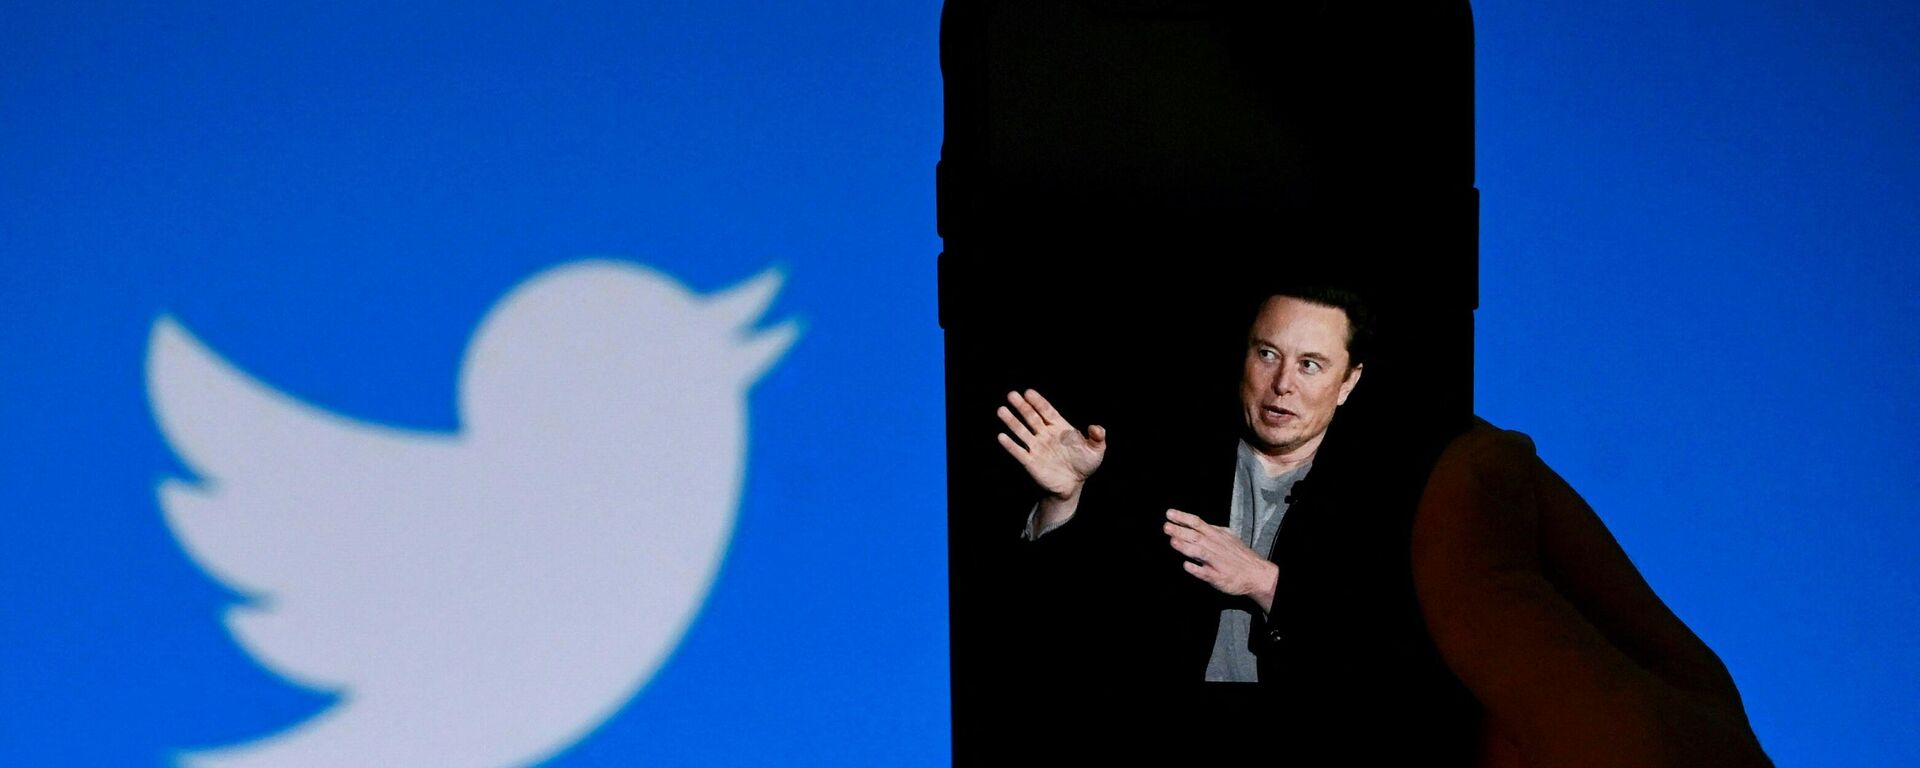 El magnate Elon Musk concretó en estos días la compra de Twitter. - Sputnik Mundo, 1920, 04.11.2022